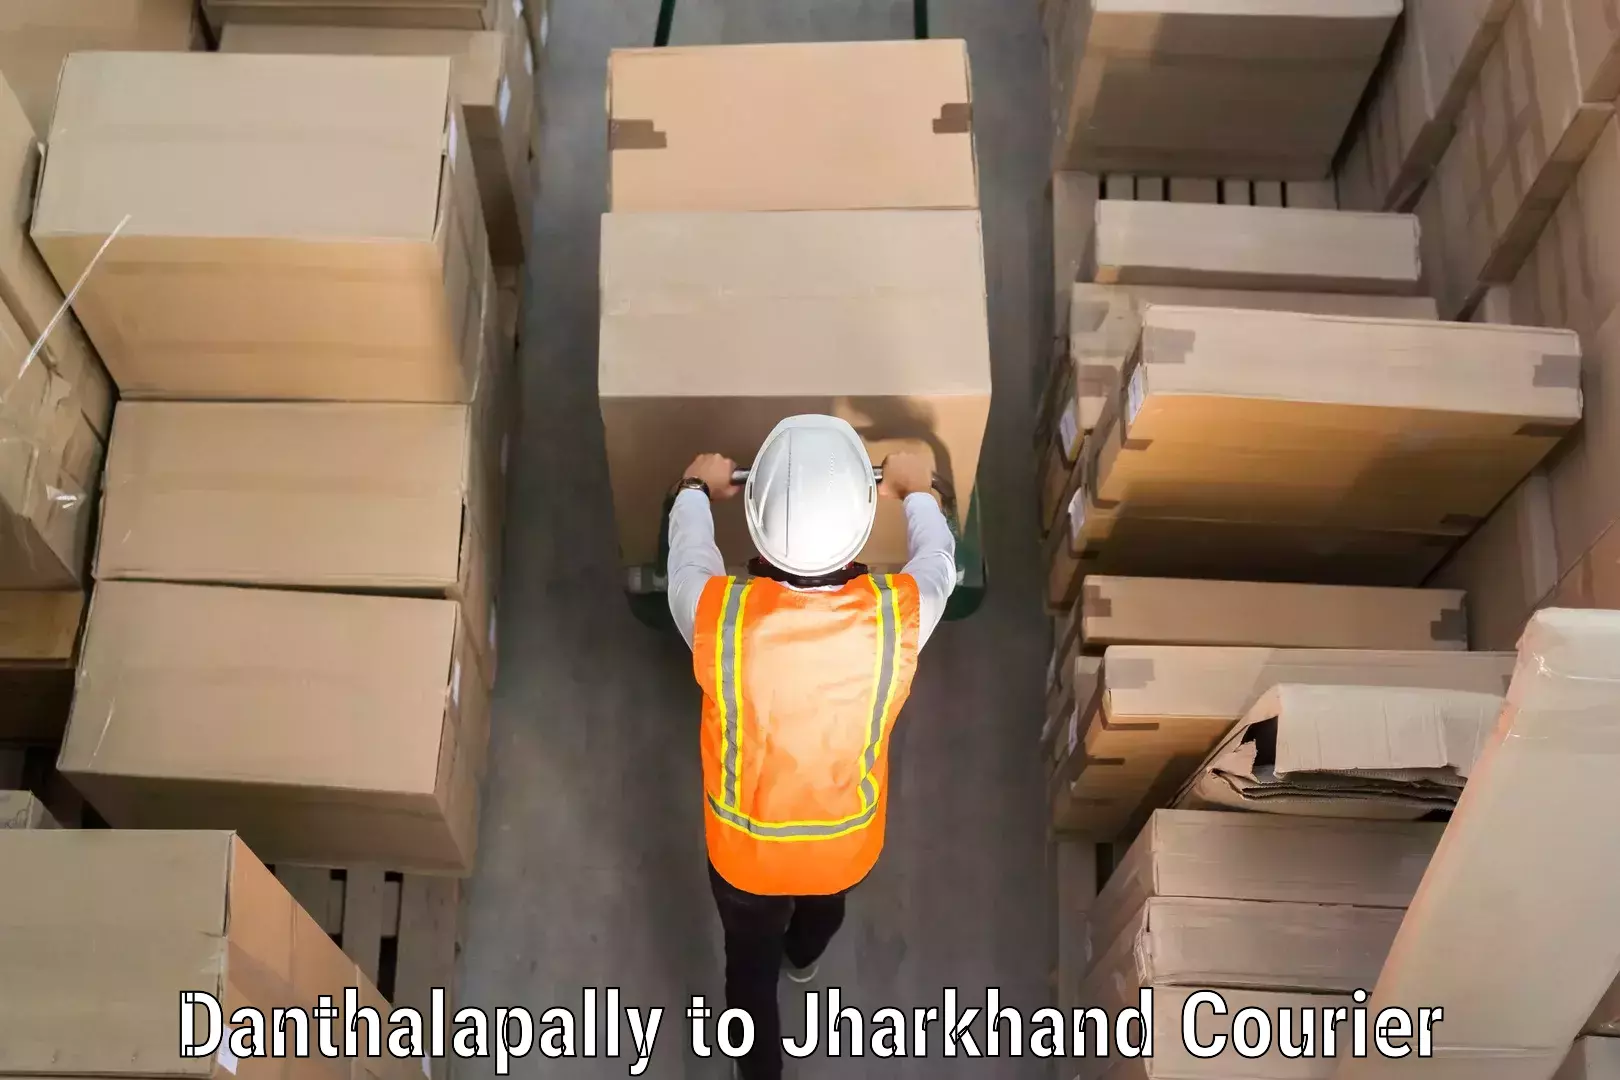 Luggage transport operations Danthalapally to Chandankiyari